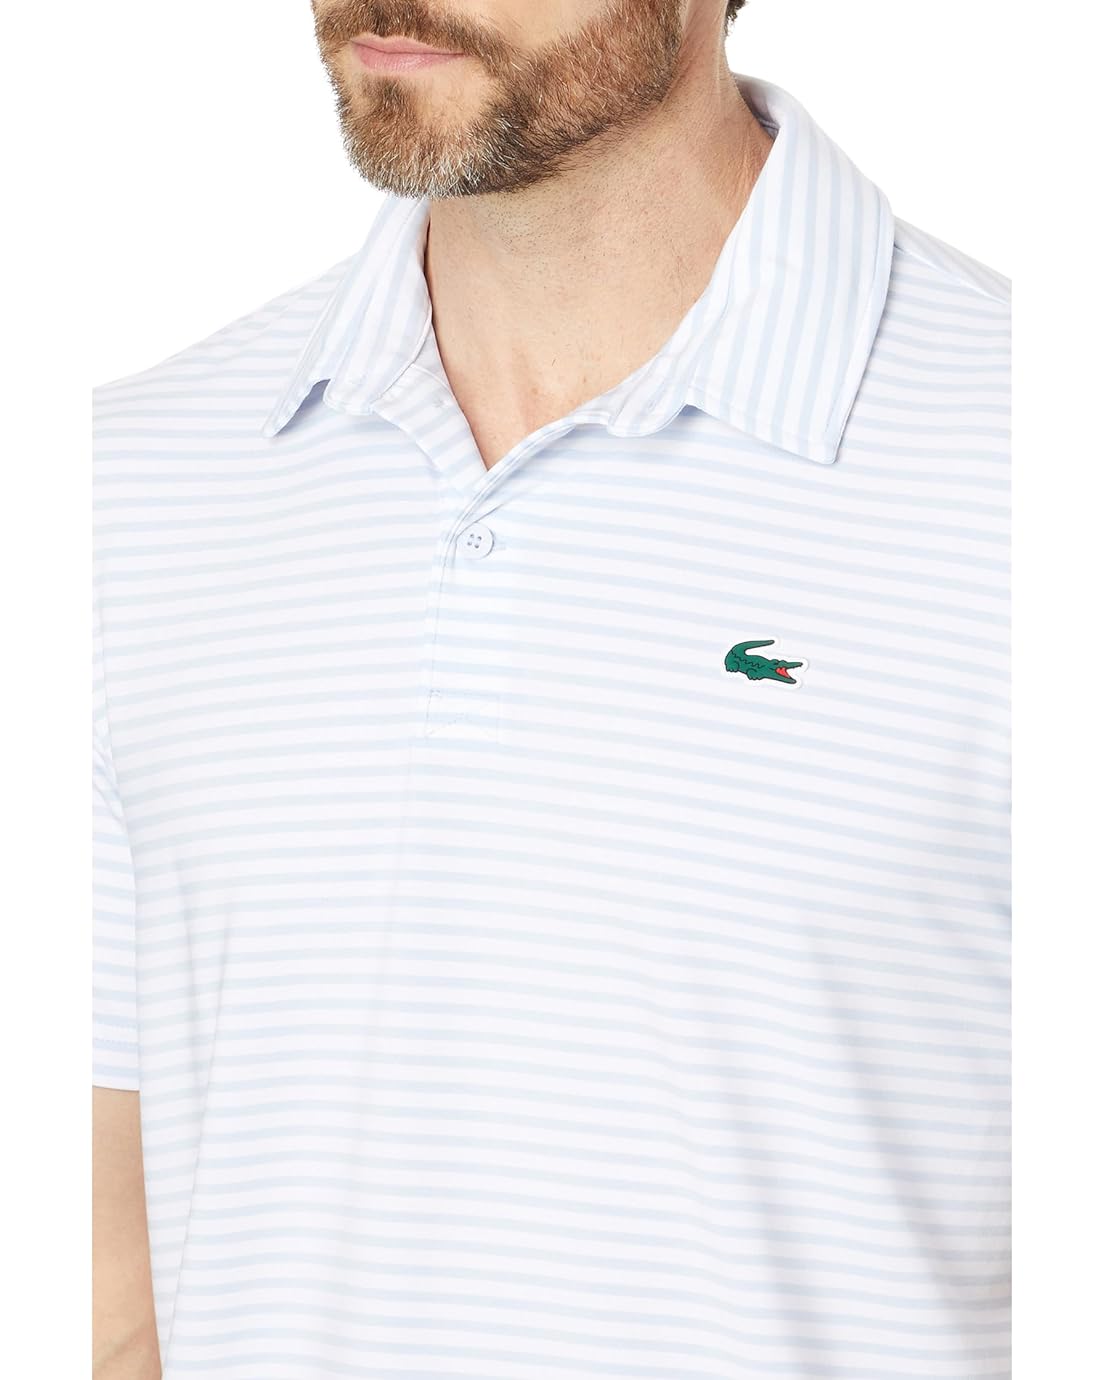 라코스테 Lacoste Short Sleeve Regular Fit Golf Polo